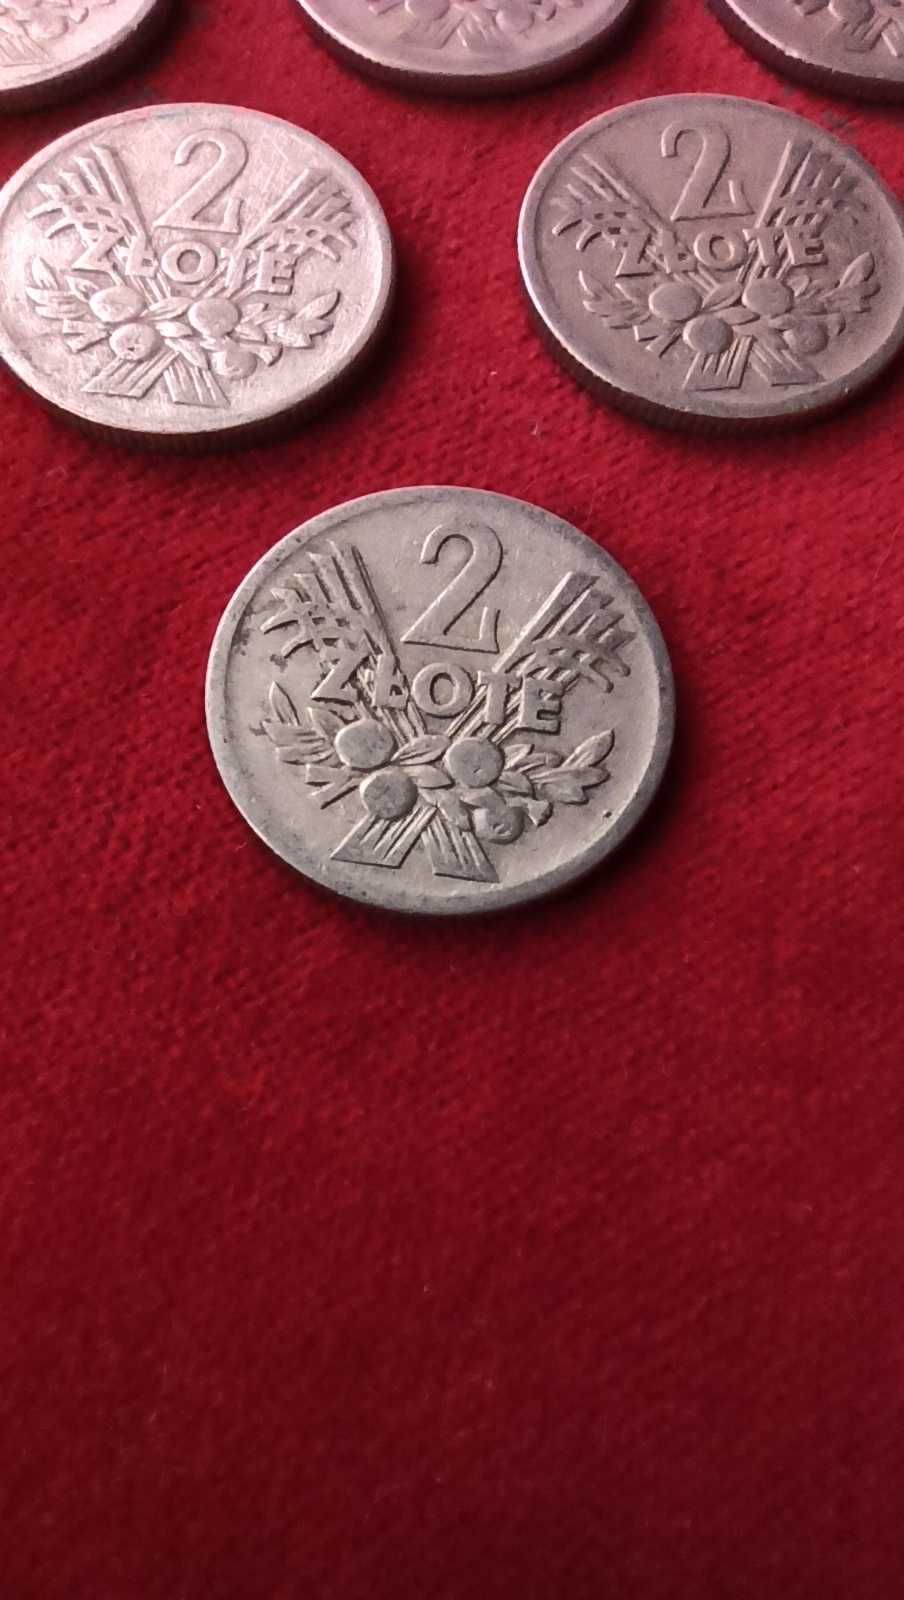 PRL, Moneta 2 złote JAGODY 1958 rok / pierwszy rocznik